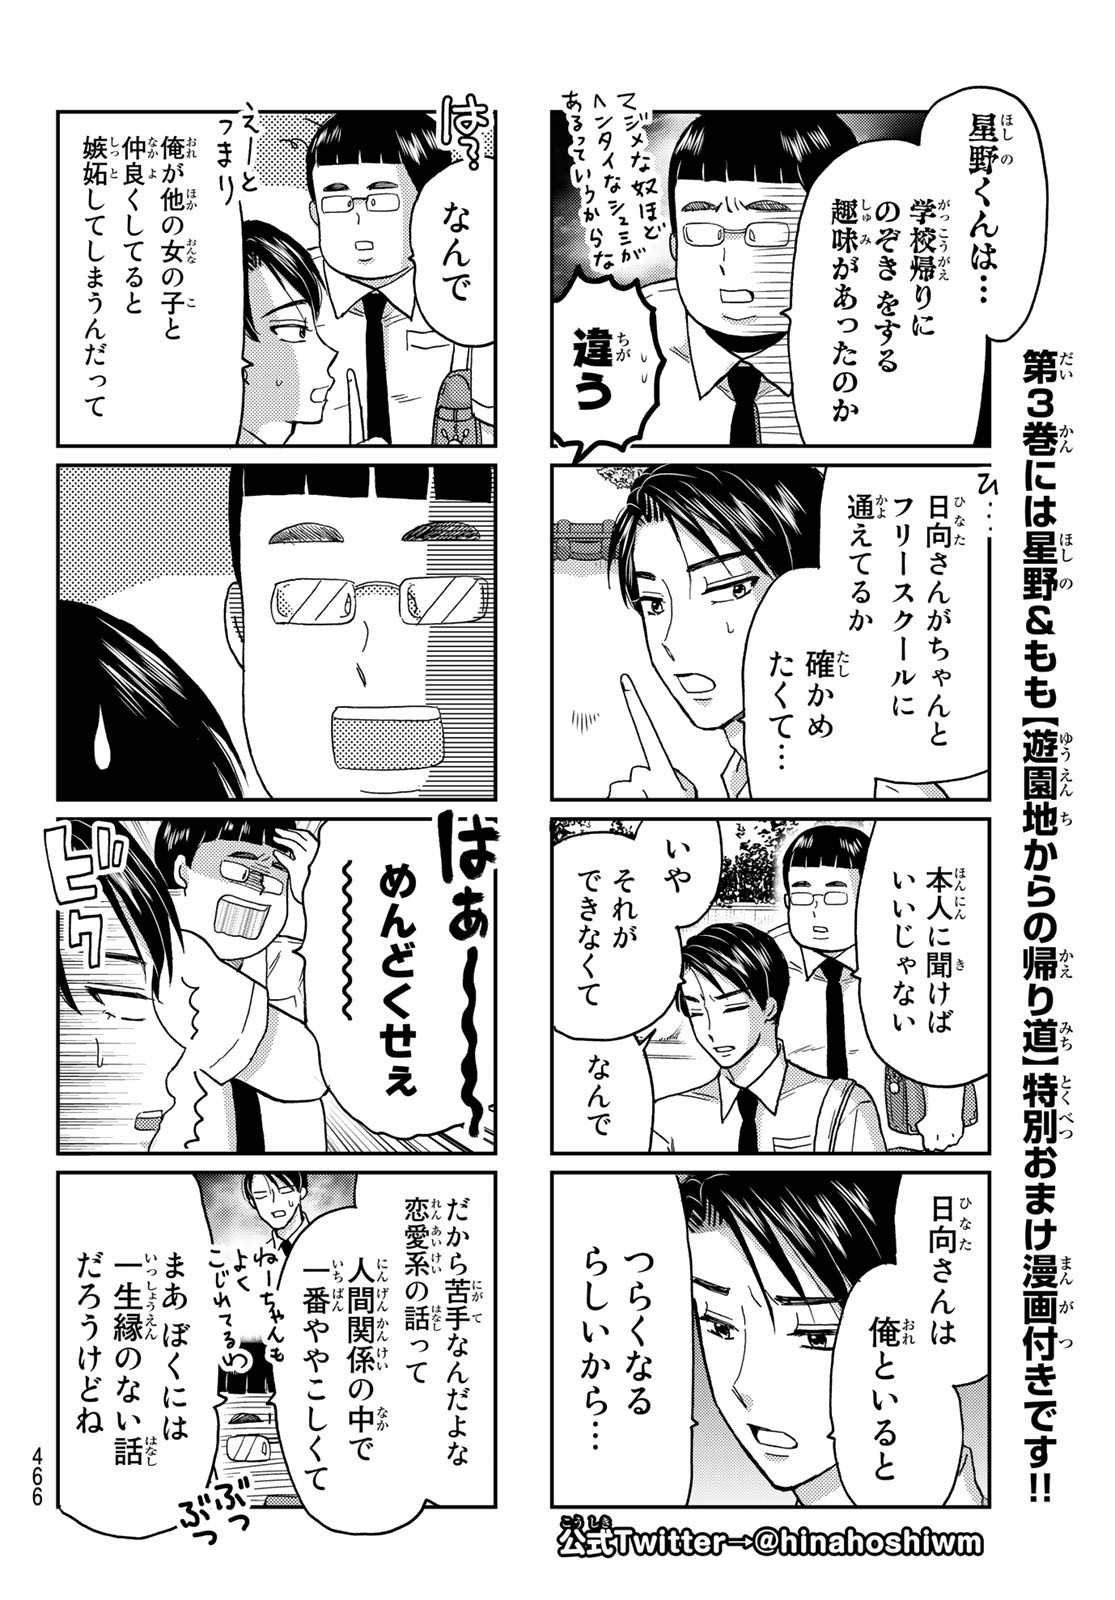 Hinata-san, Hoshino desu. - Chapter 042 - Page 2